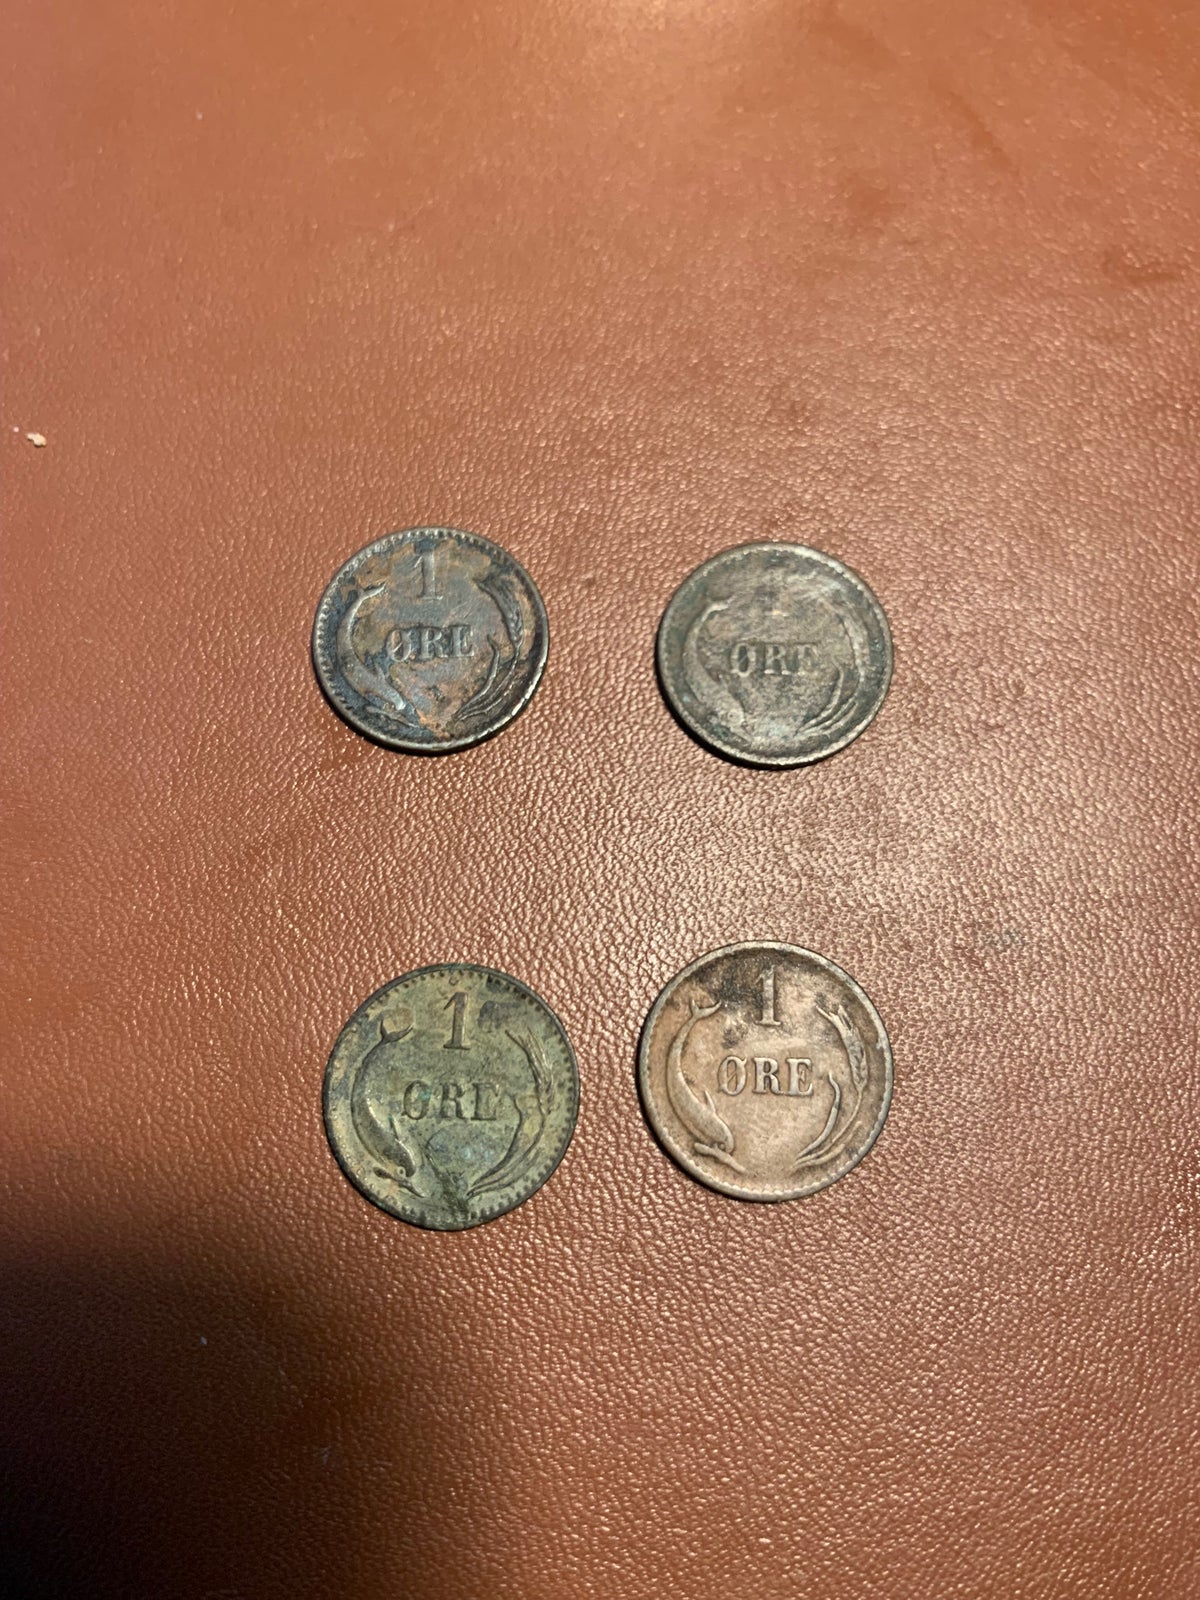 Danmark, mønter, 1 Øre